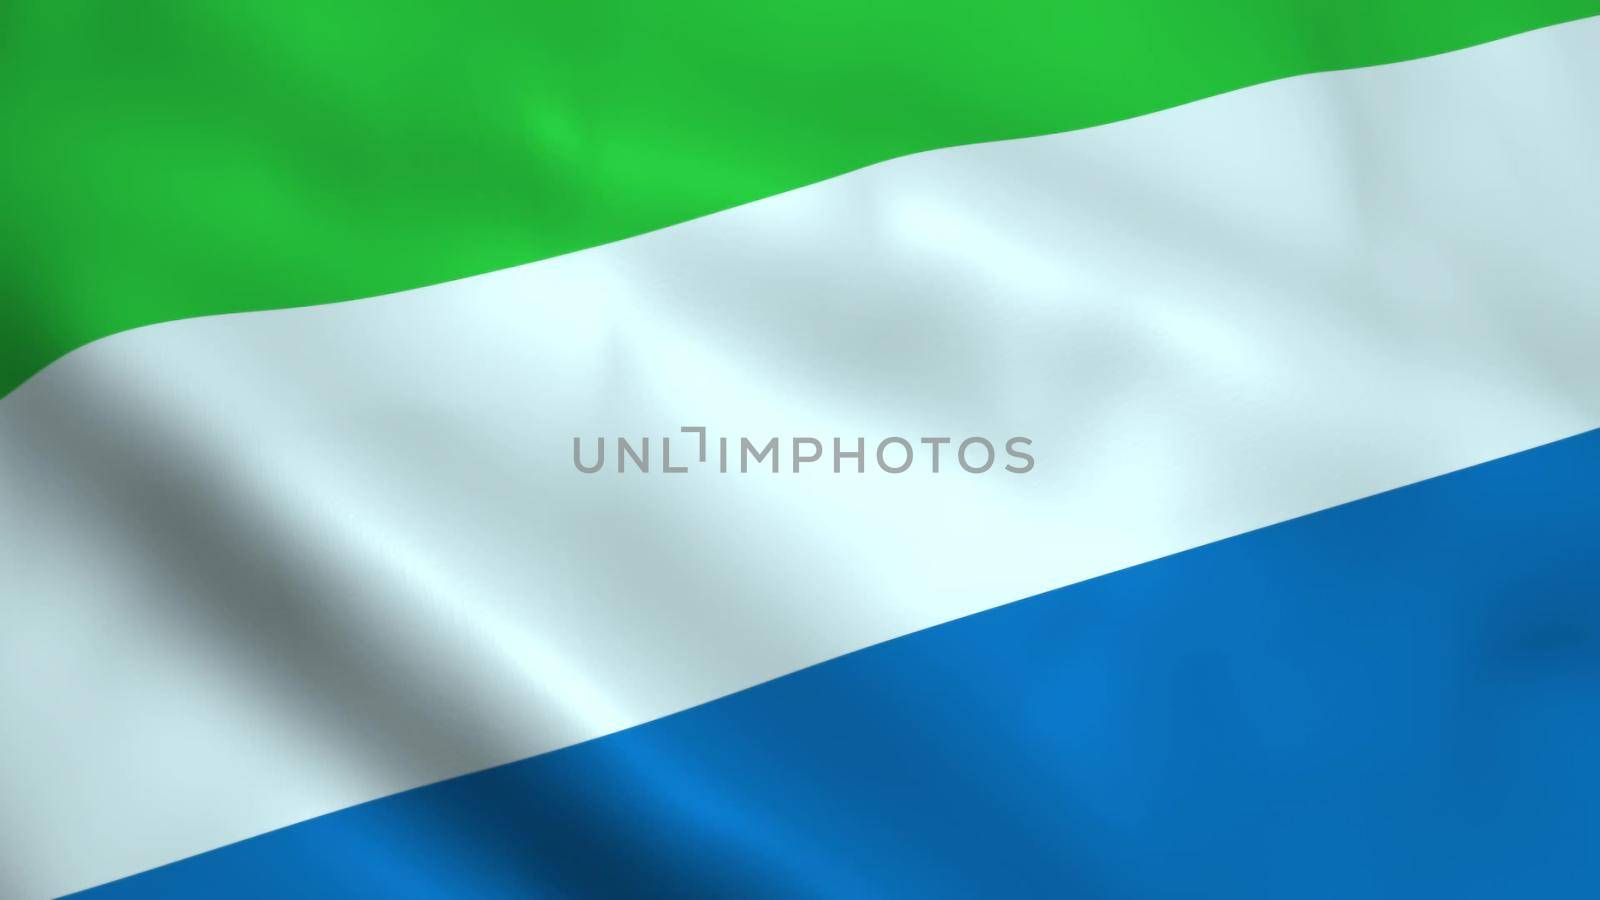 Realistic Sierra Leone flag waving in the wind.